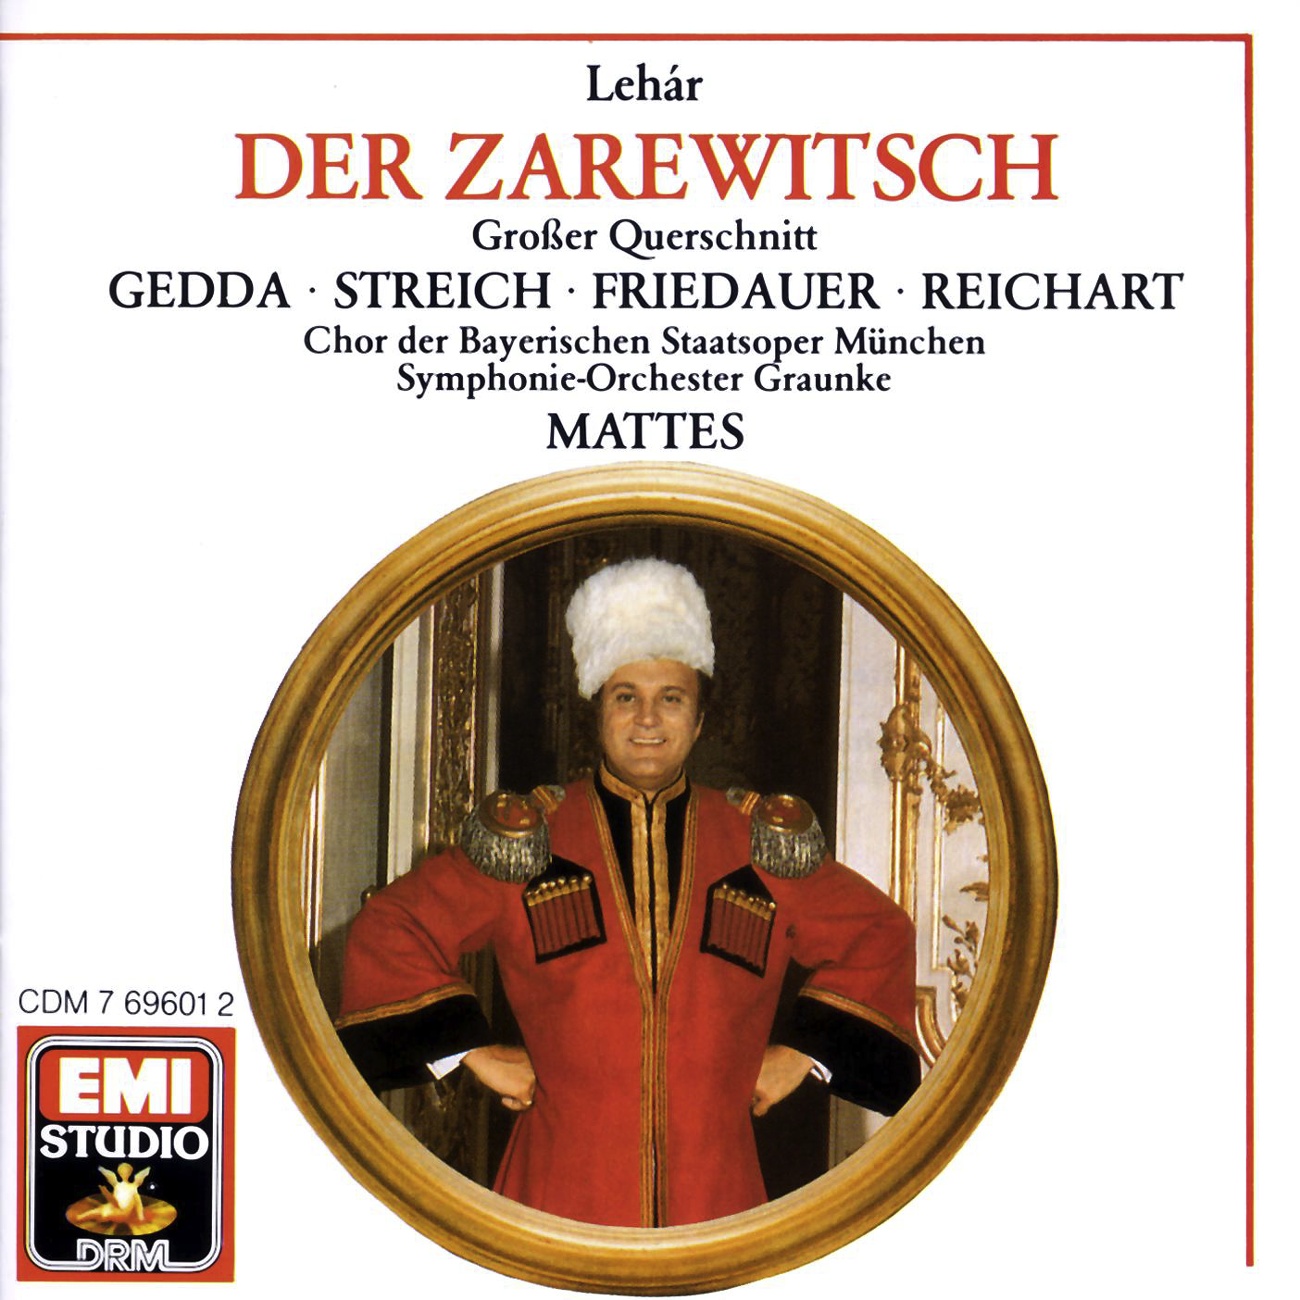 Der Zarewitsch  Highlights 1988 Digital Remaster, Erster Akt: Allein, wieder allein  Es steht ein Soldat am Wolgastrand Zar